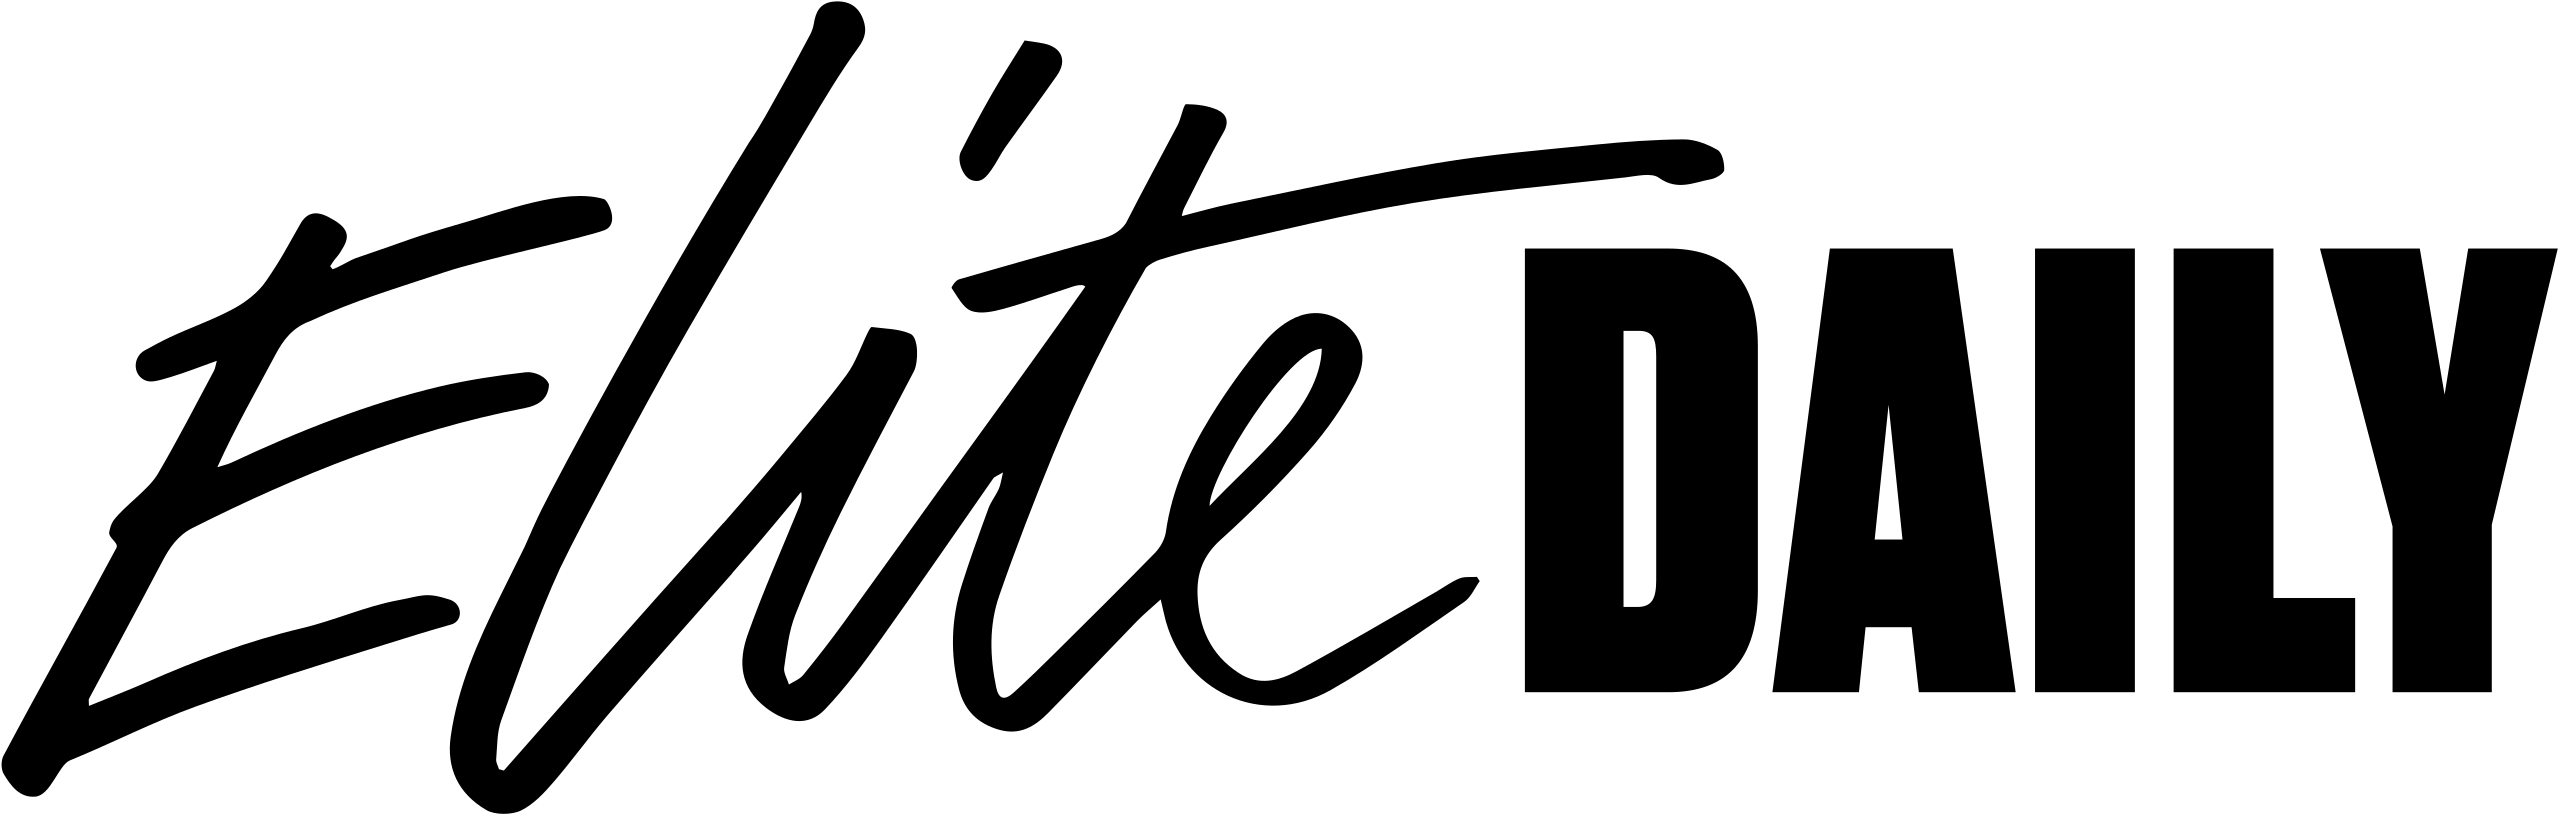 Elite Daily 2021 logo.svg